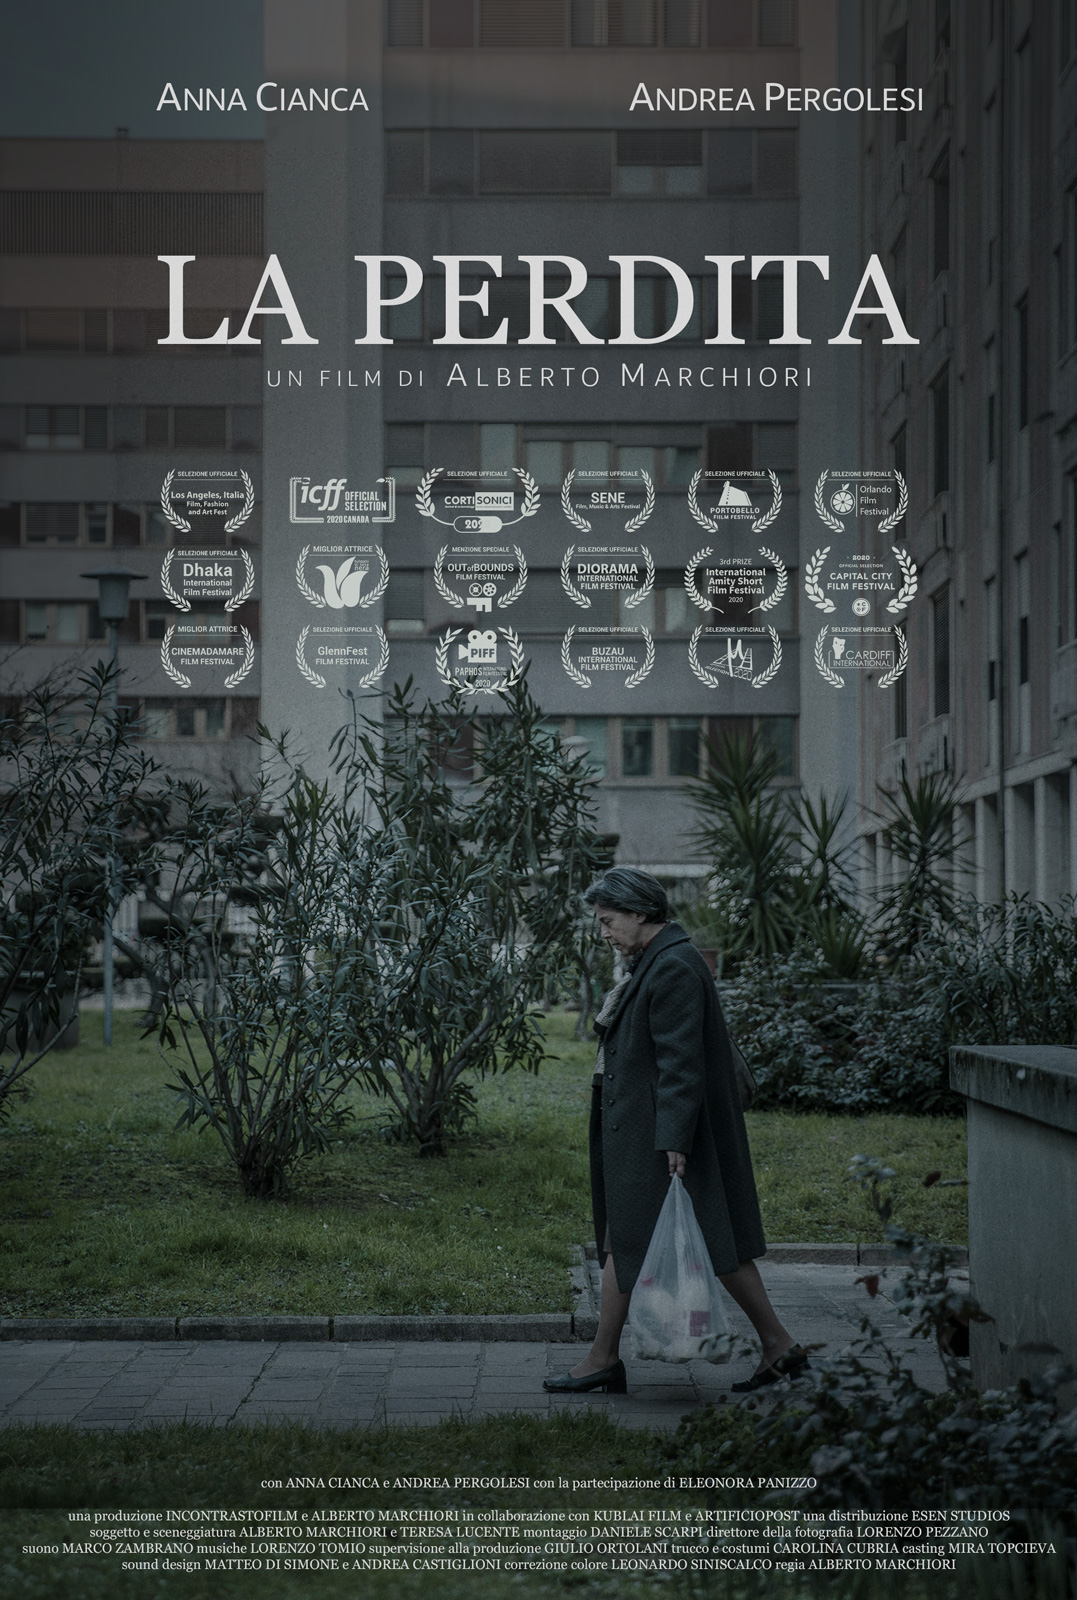 Distribuzione film cortometraggio: poster del film corto "La perdita" di Alberto Marchiori